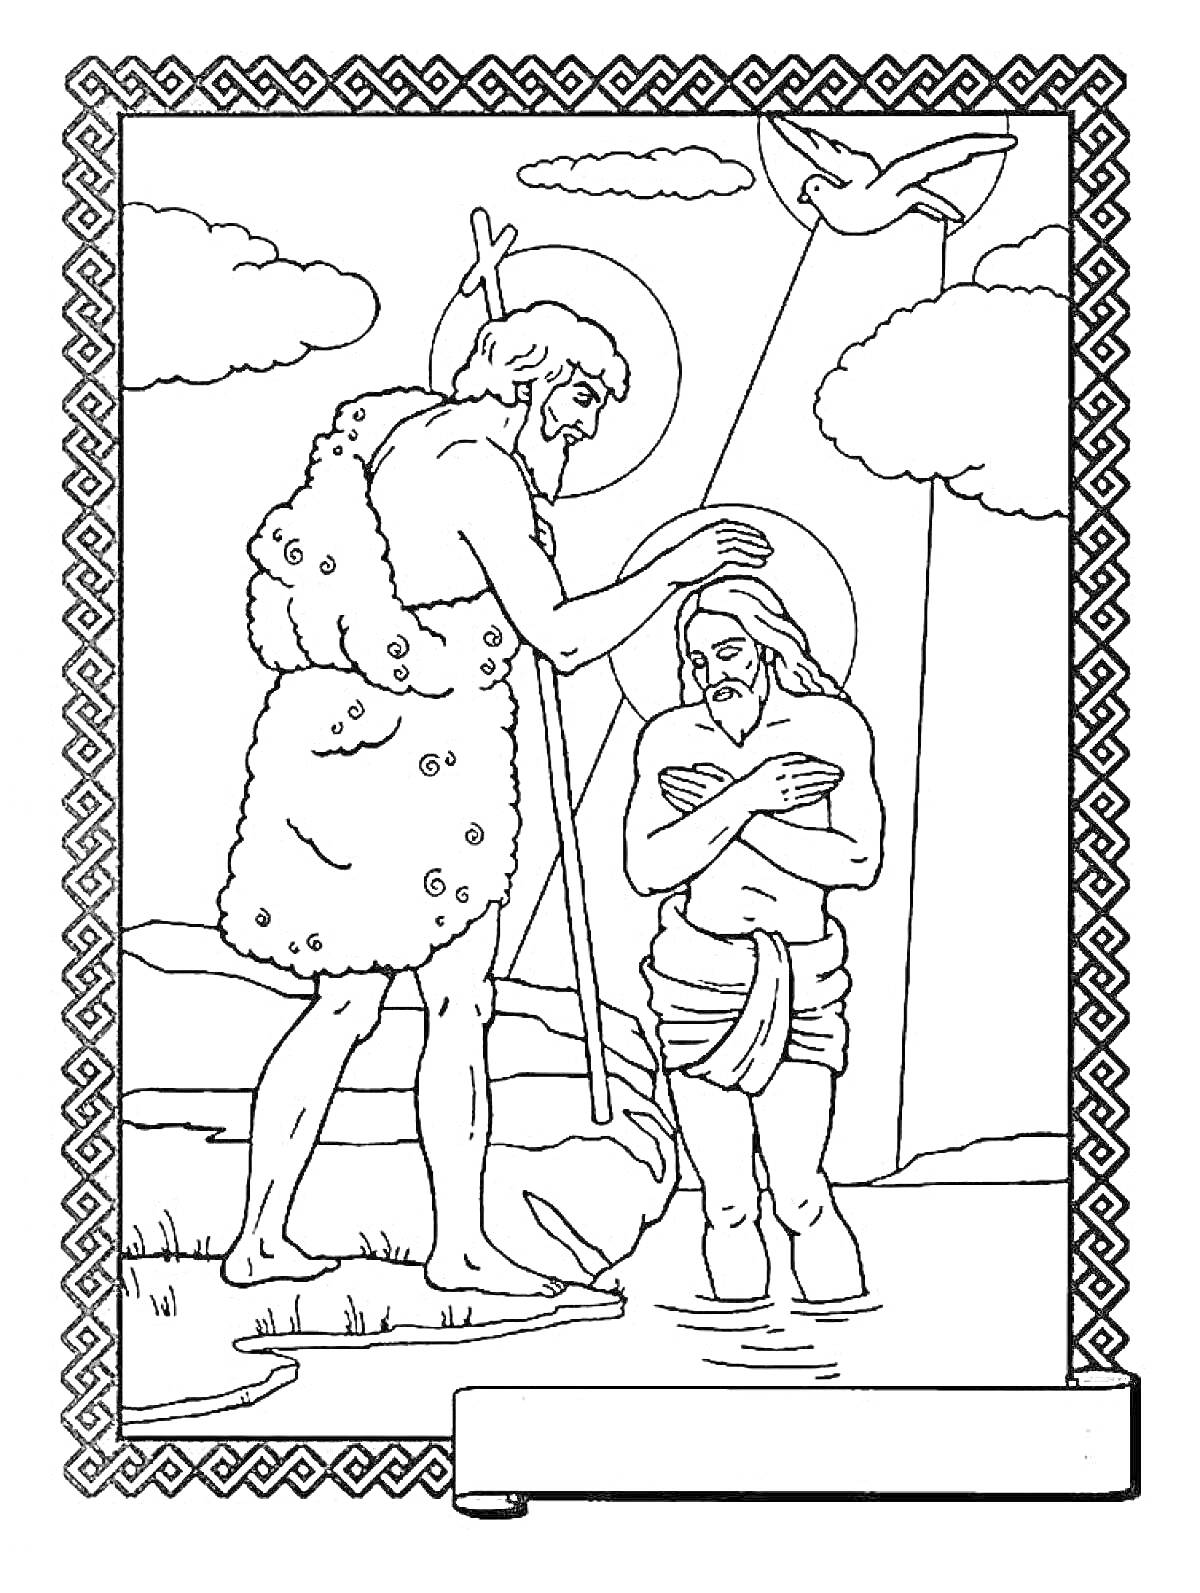 Раскраска Крещение Господне - Мужчина крестит другого мужчину в реке, мужчина с крестом и нимбом, второй мужчина с нимбом, небеса с облаками и лучами, поднимающаяся птица